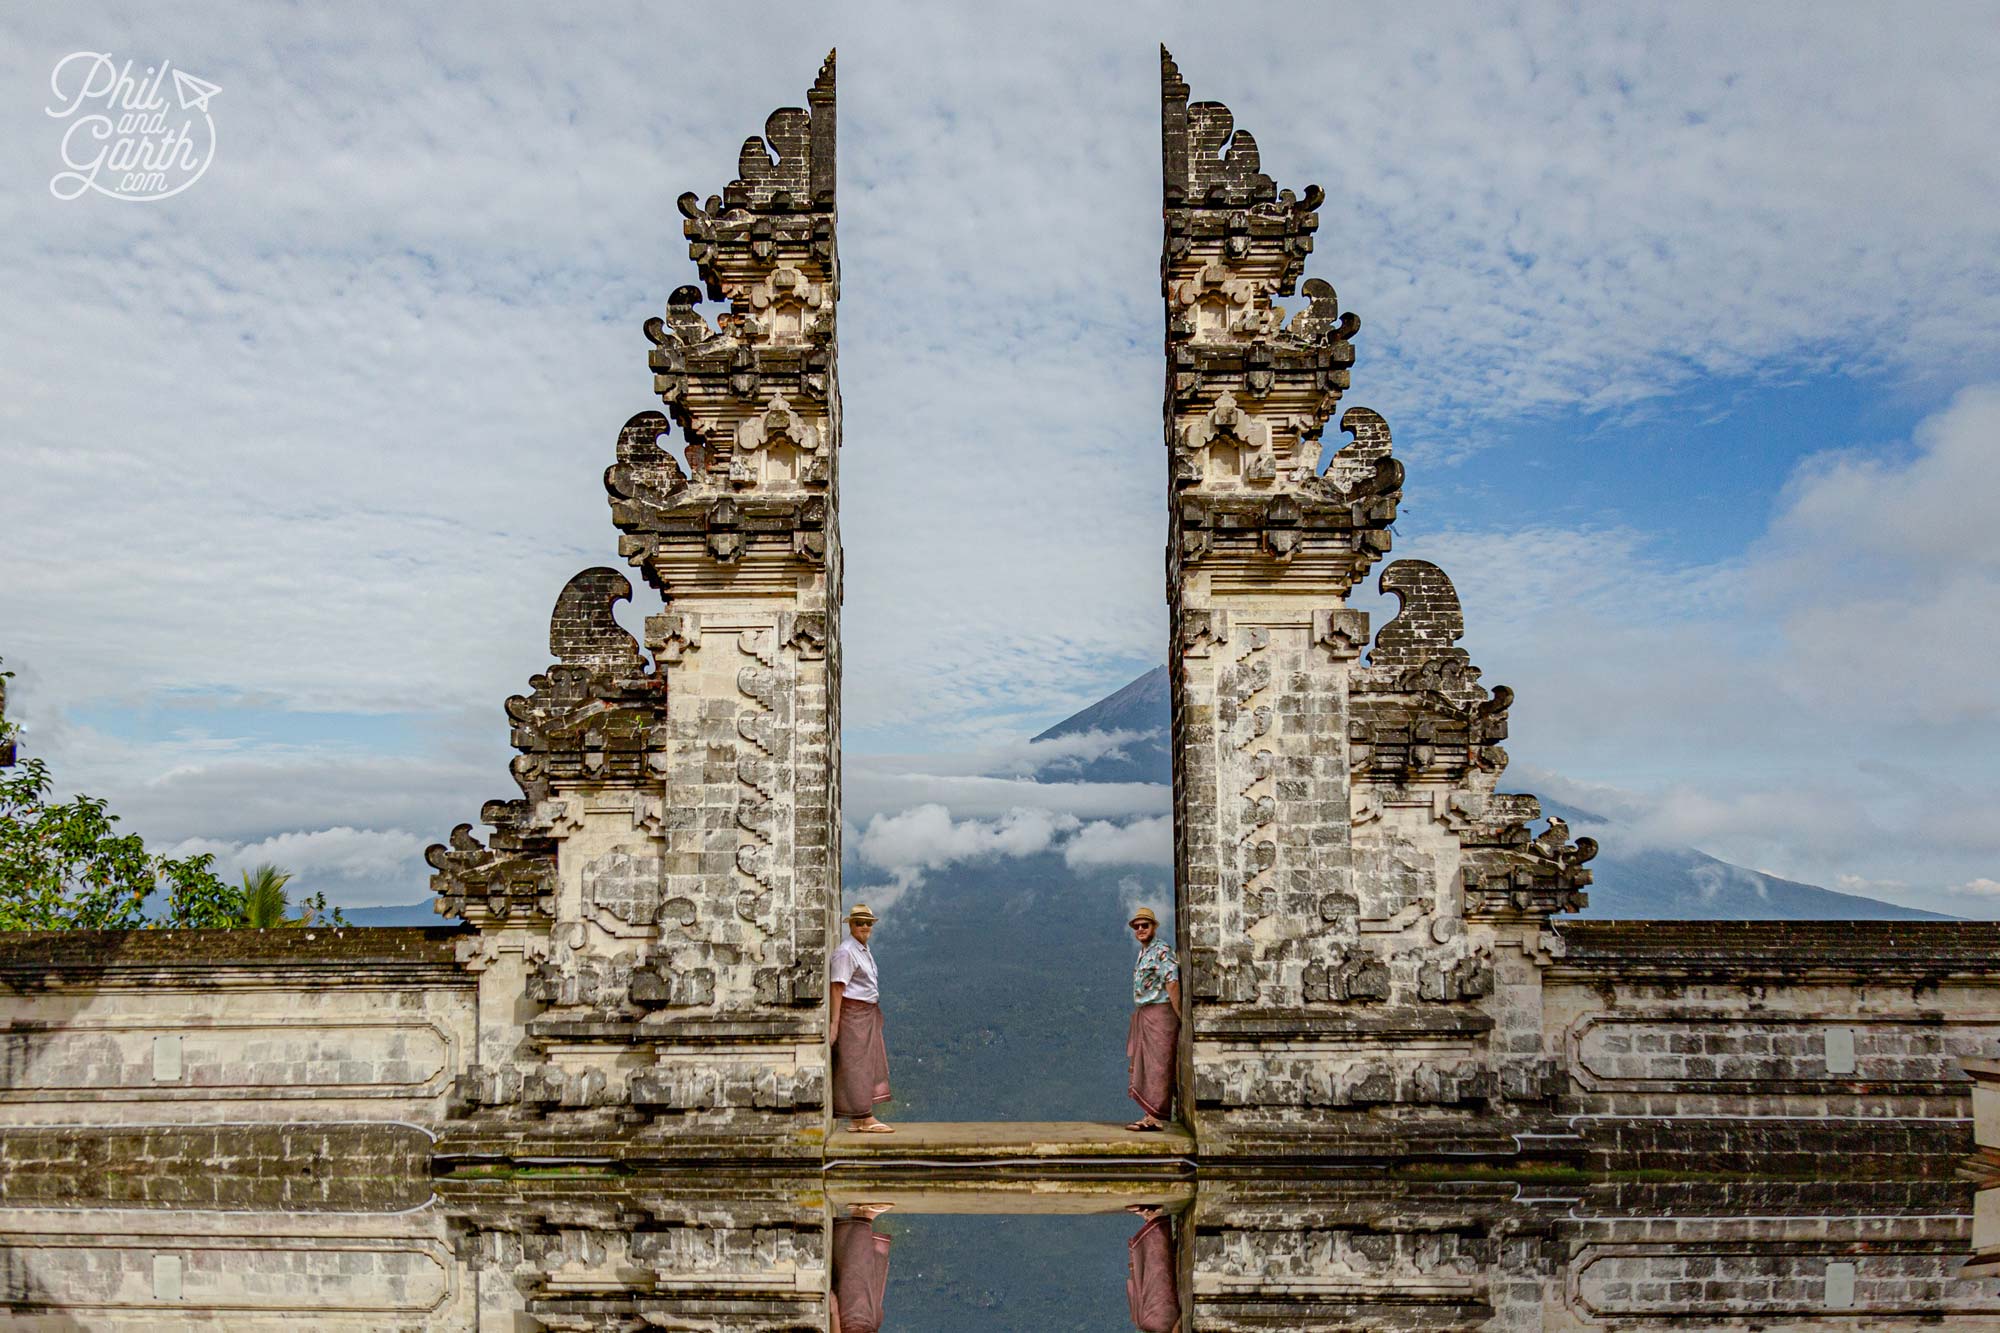 Pura Lempuyang Luhur – The temple in the clouds